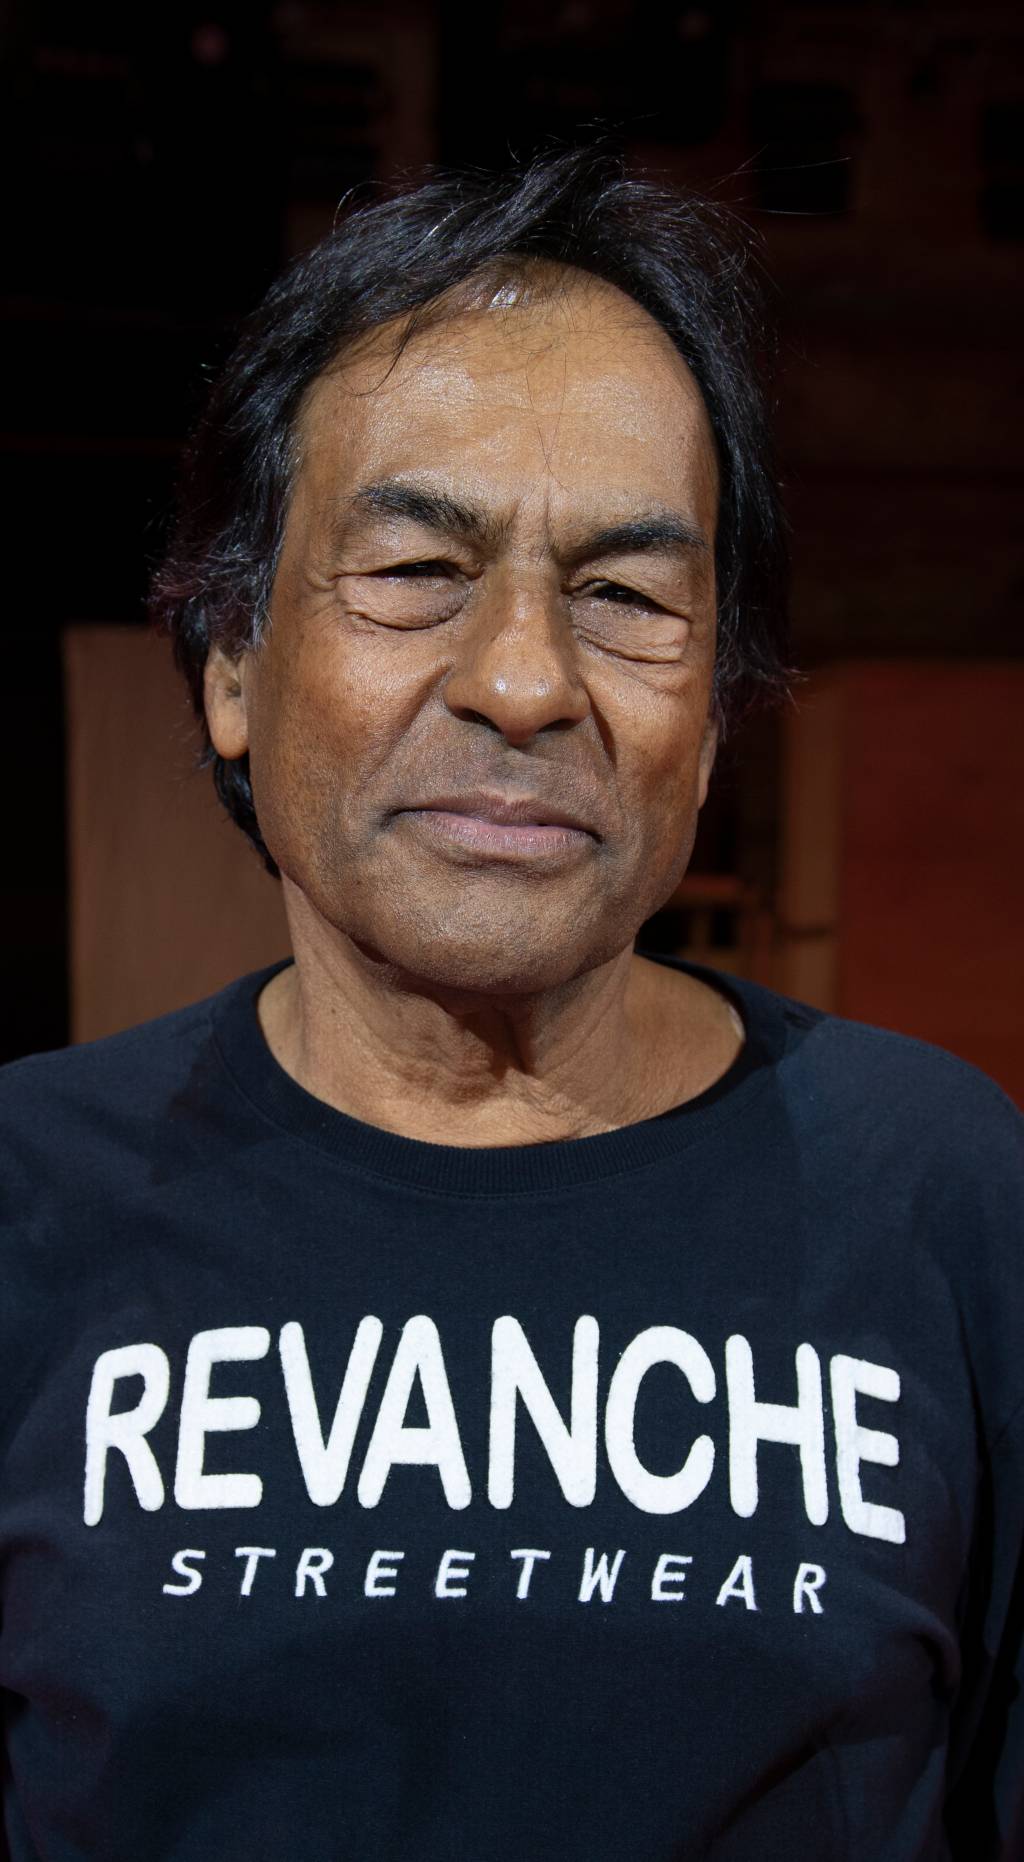 Imagem mostra homem com camiseta preta escrita 'Revanche'